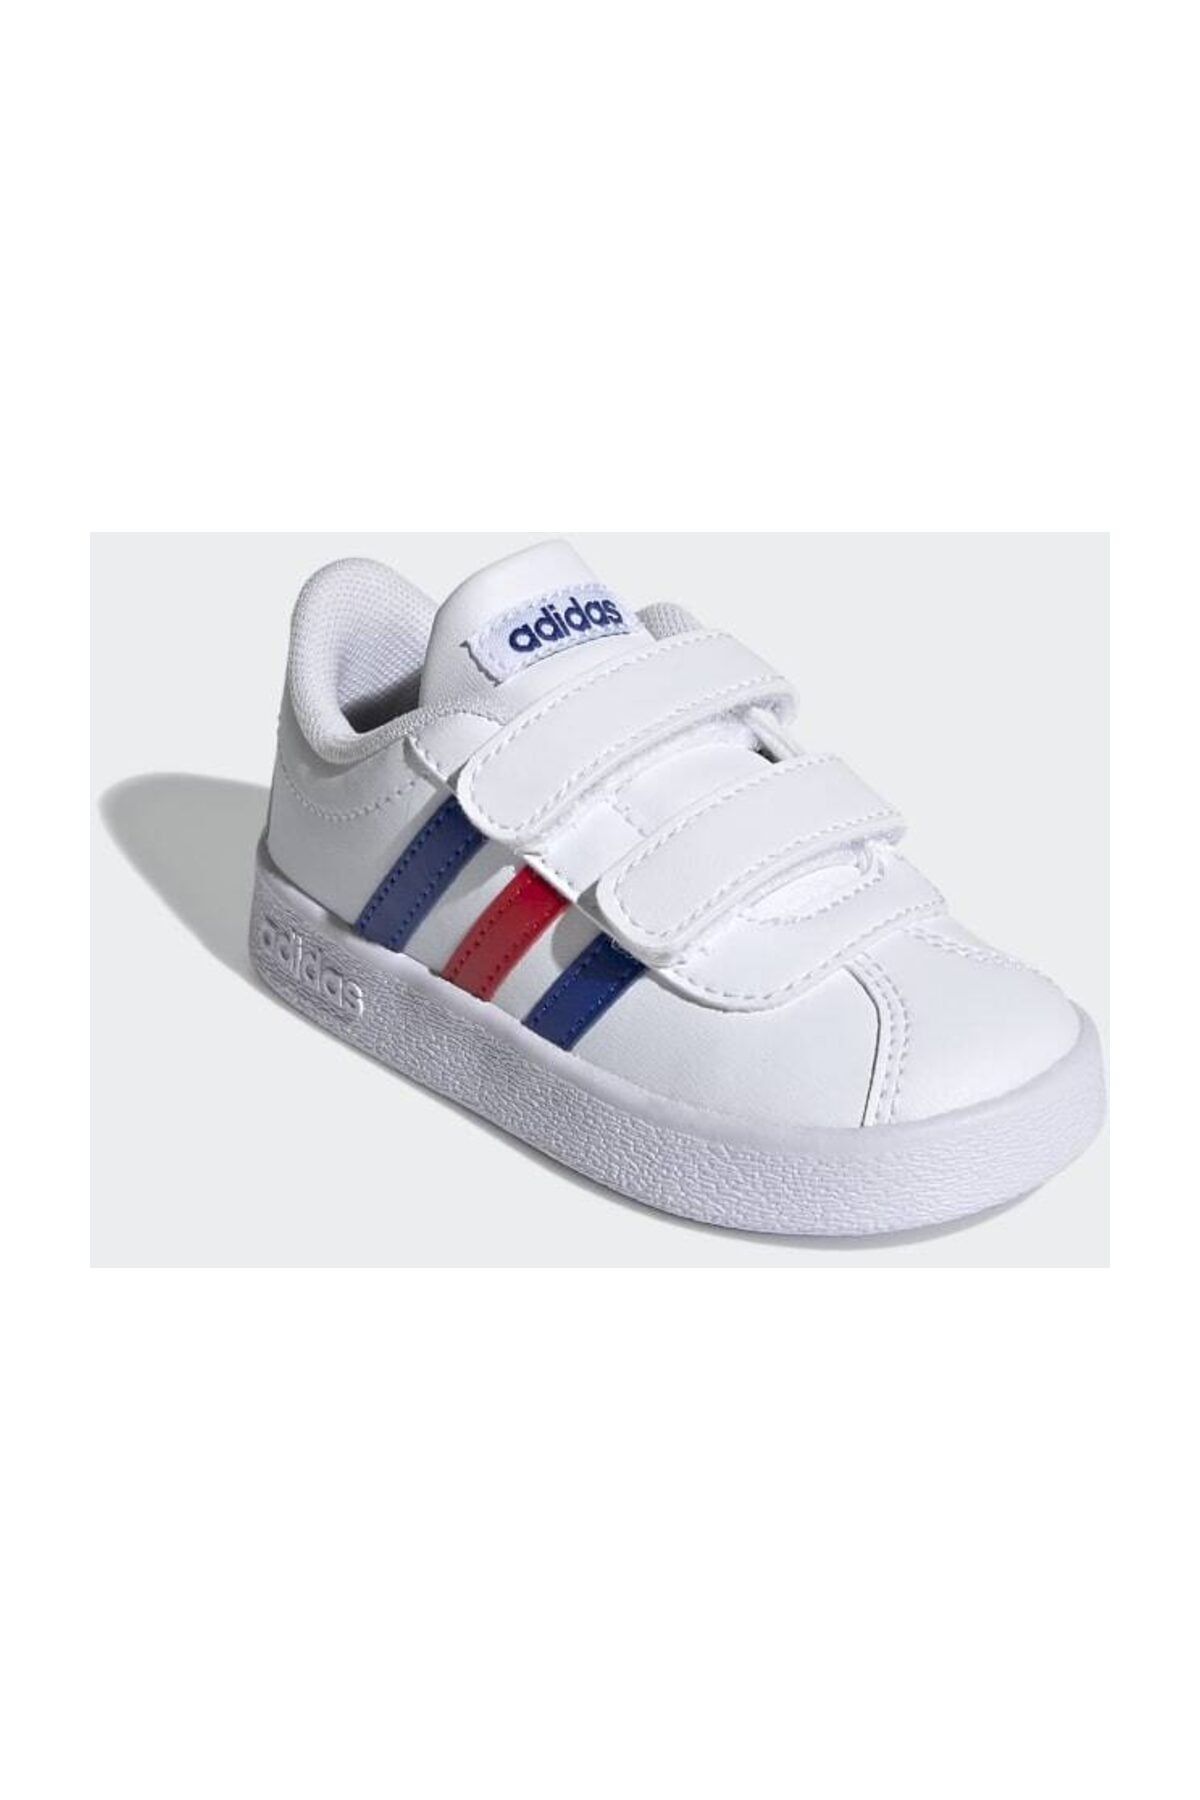 adidas VL COURT 2.0 CMF I Beyaz Erkek Çocuk Sneaker Ayakkabı 101085041